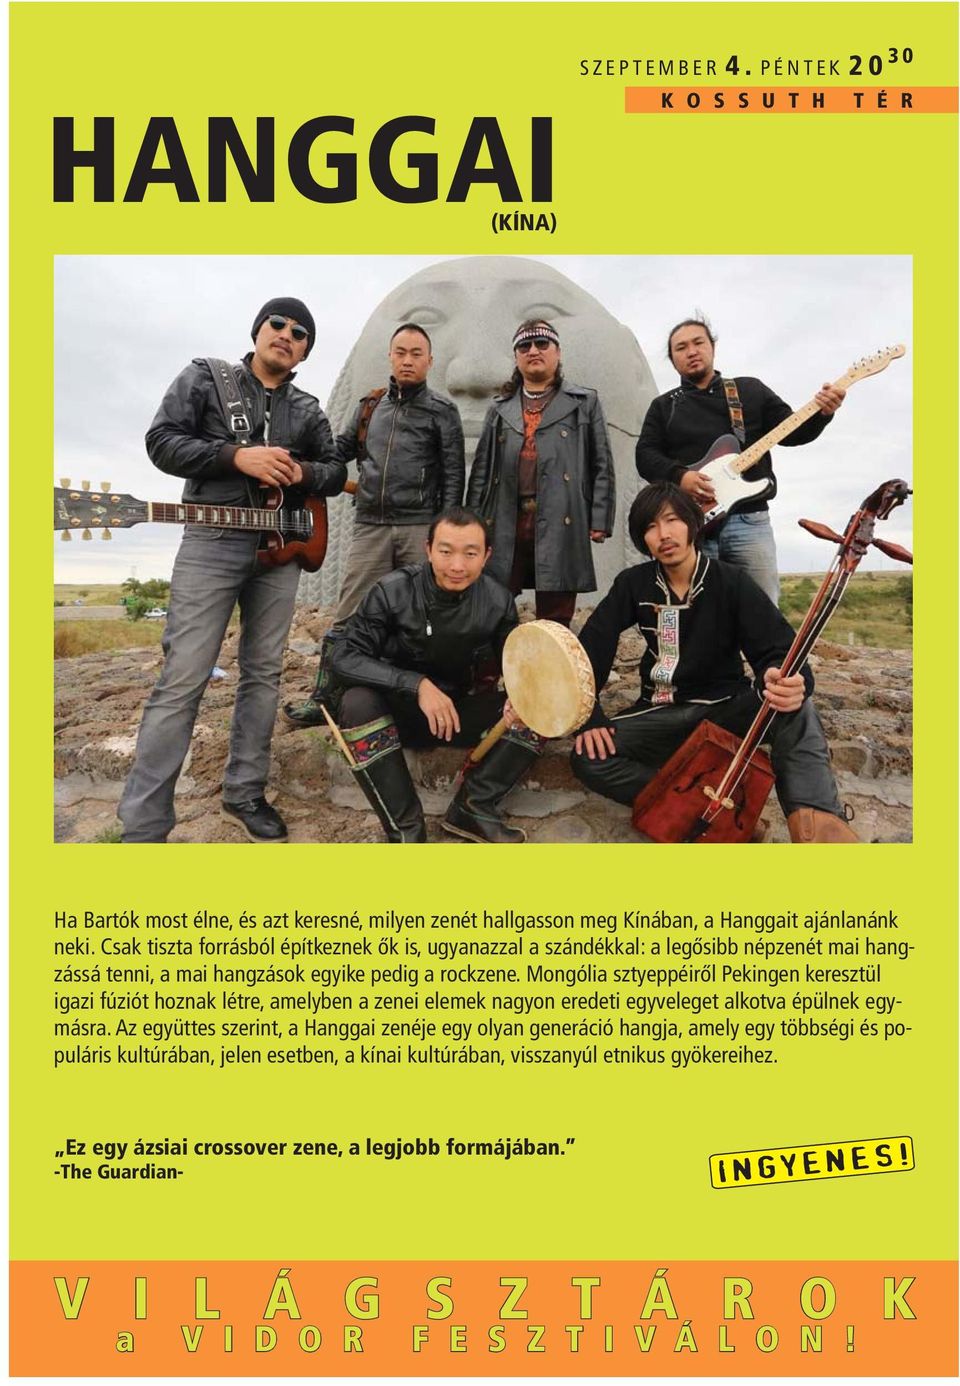 Mongólia sztyeppéiről Pekingen keresztül igazi fúziót hoznak létre, amelyben a zenei elemek nagyon eredeti egyveleget alkotva épülnek egymásra.